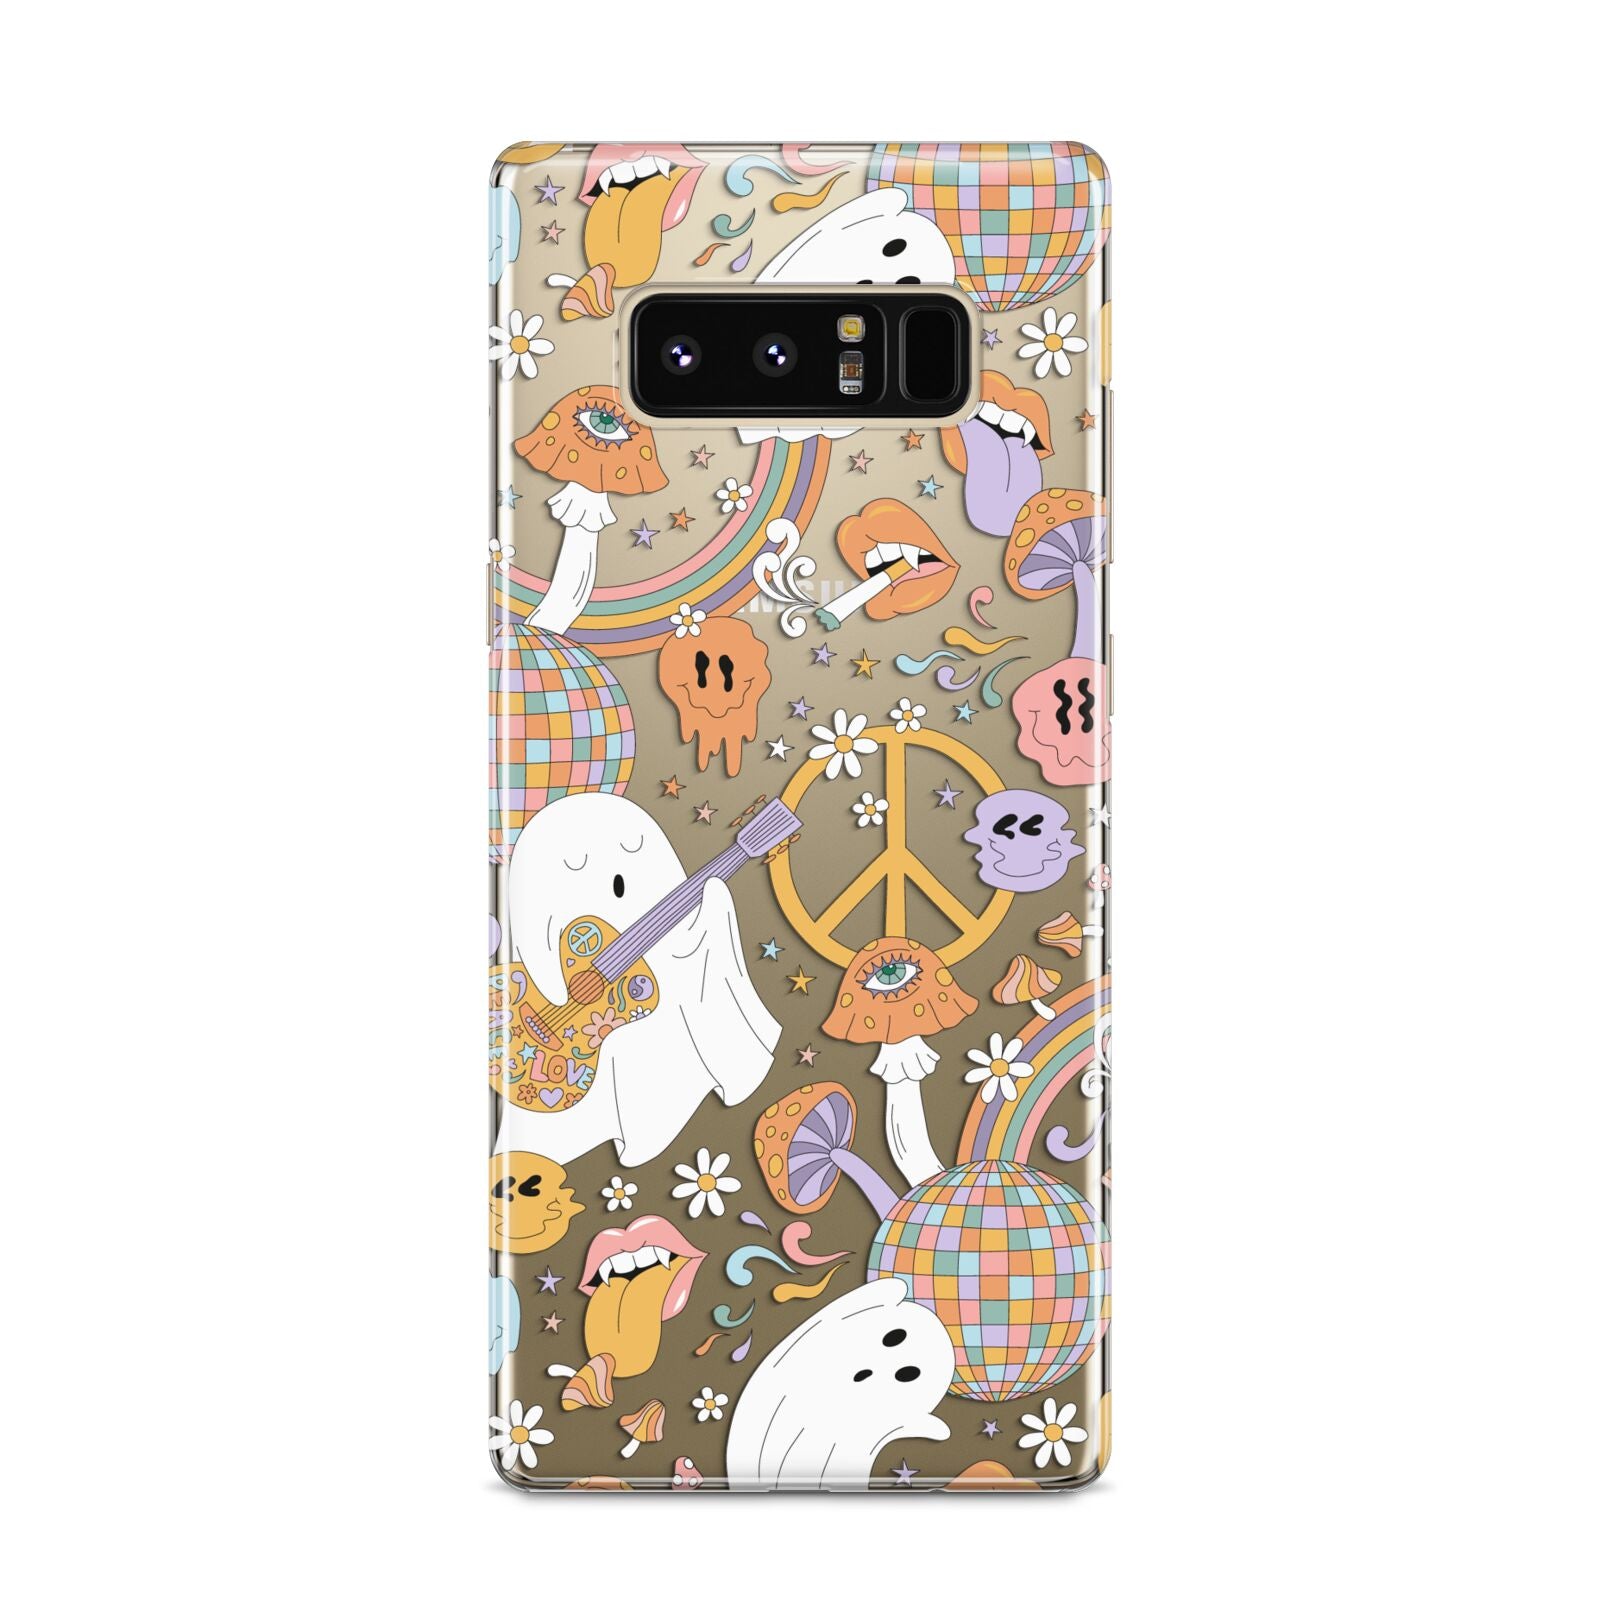 Disco Ghosts Samsung Galaxy S8 Case